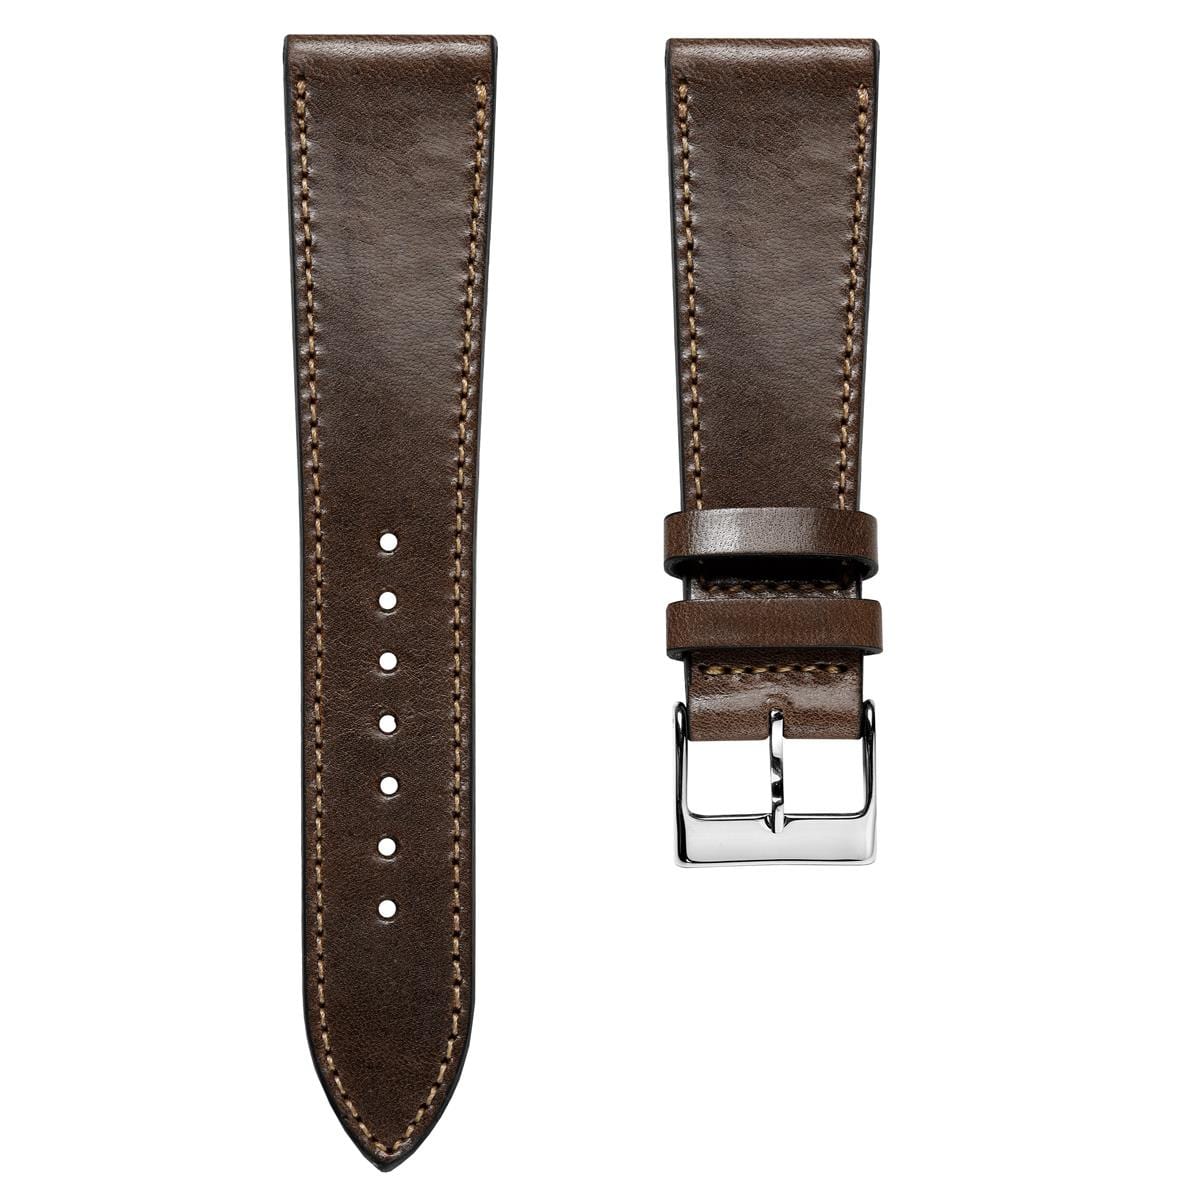 Radstock Missouri Vintage Leather Watch Strap - Dark Brown